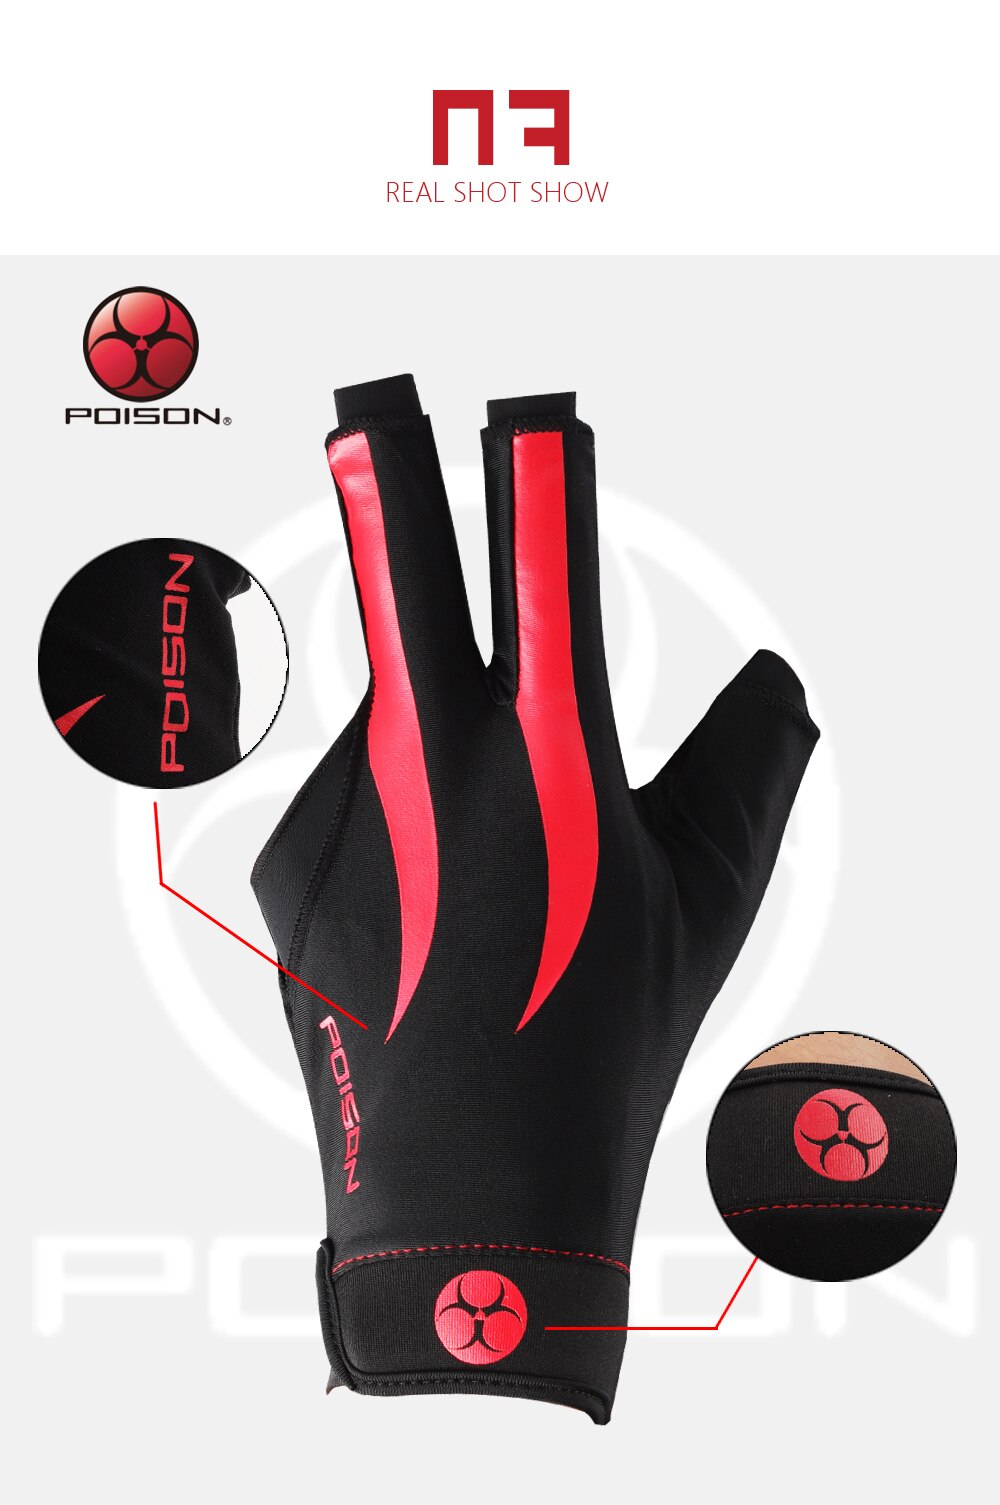 Original POISON Gloves Billiard Gloves One Piece Non-slip Lycra Fabric Pool Gloves Snooker Glove